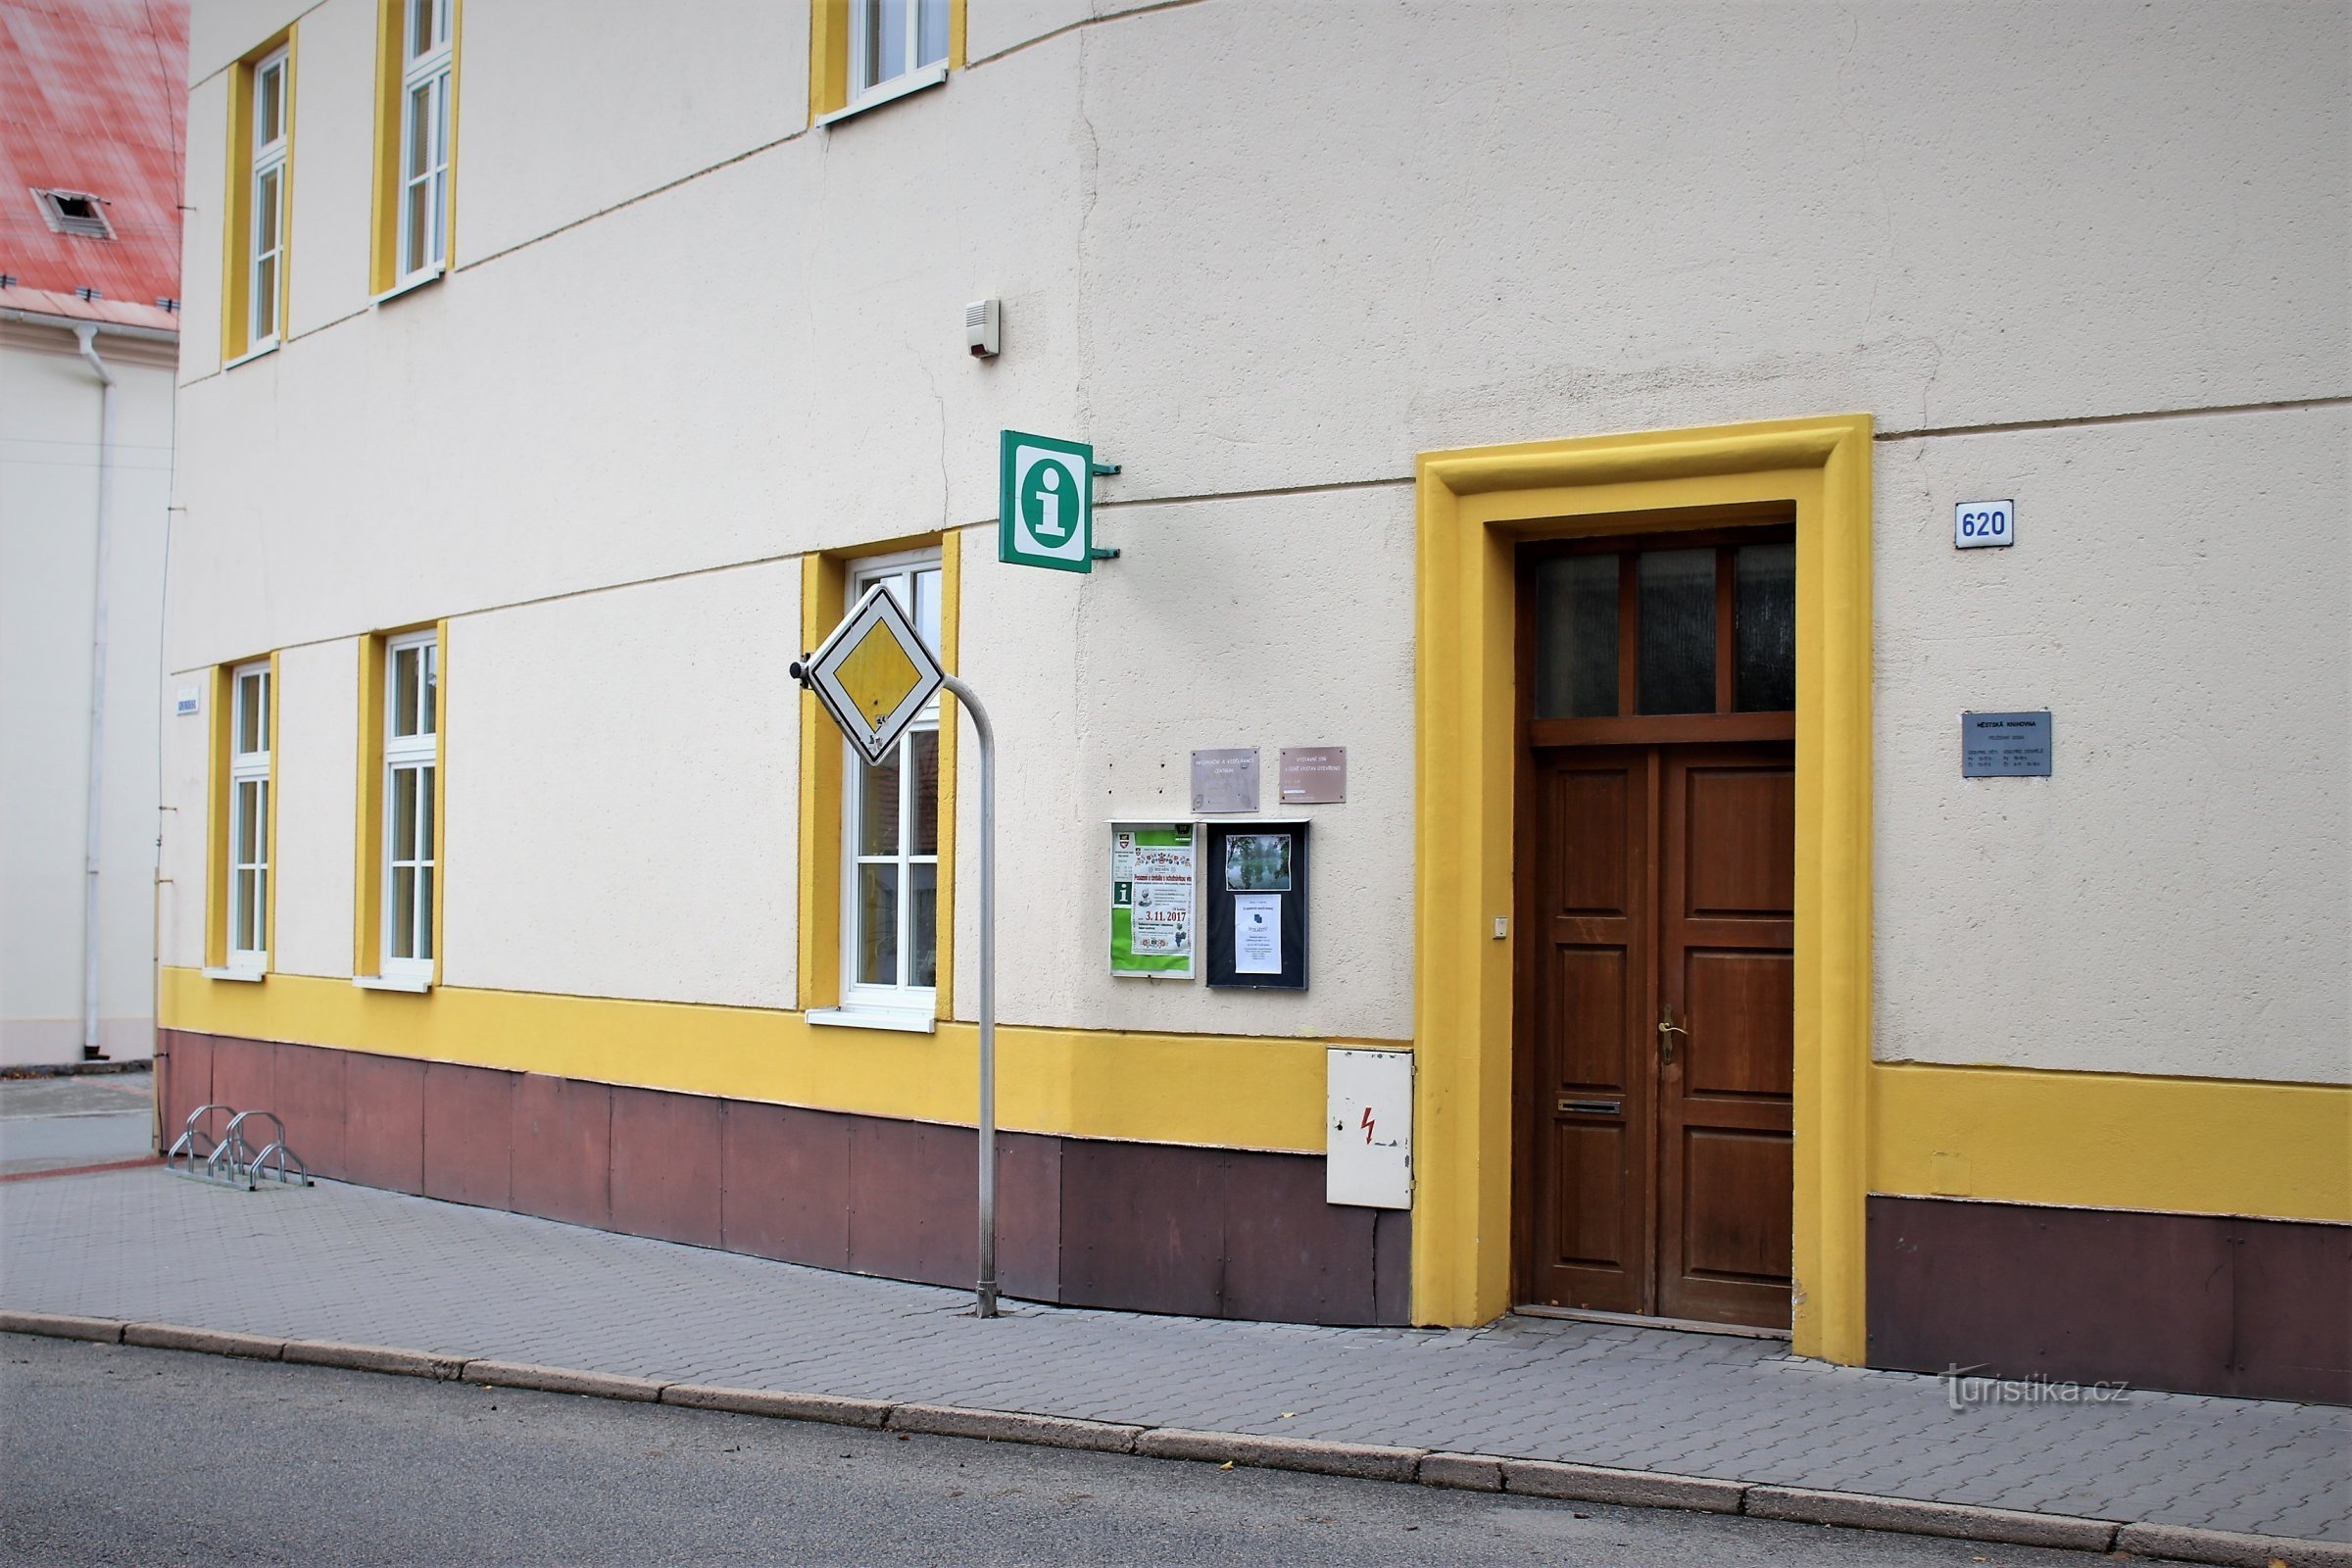 Rájec-Jestřebí - A város információs és oktatási központja